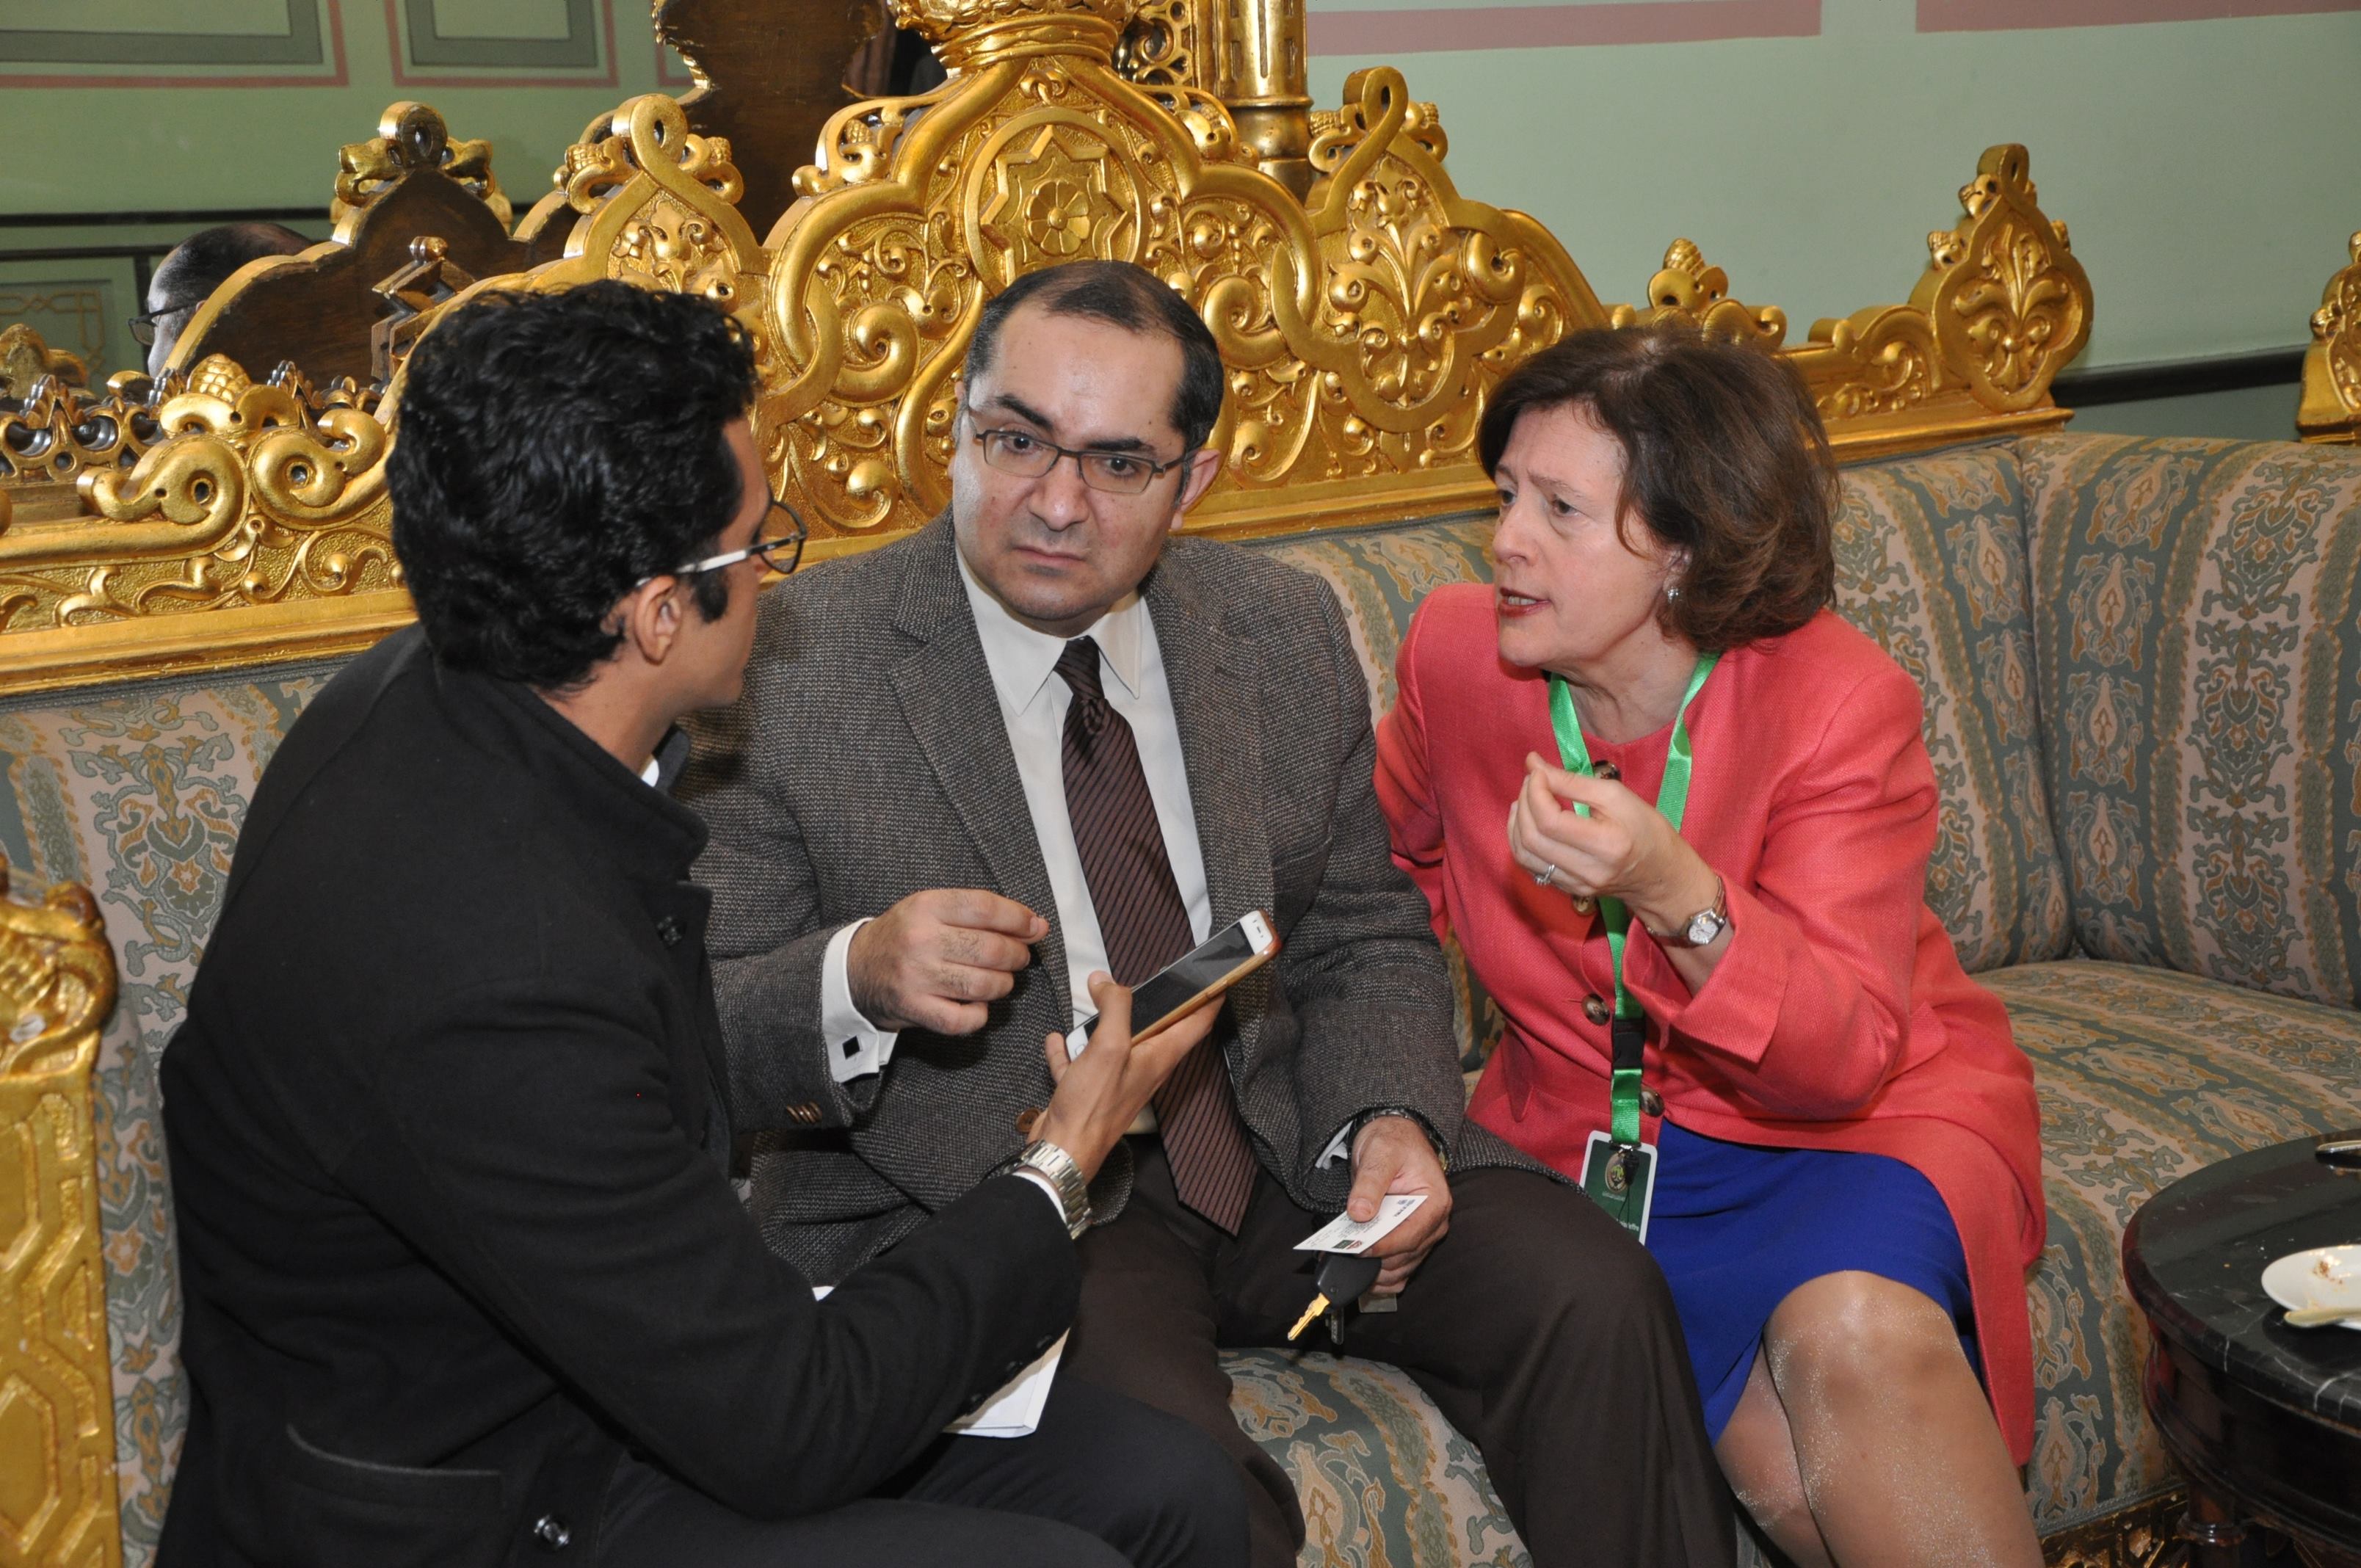 الزميل محمد أسعد أثناء حواره مع رئيسة قسم التقارير والدراسات بمجلس الدولة الفرنسي